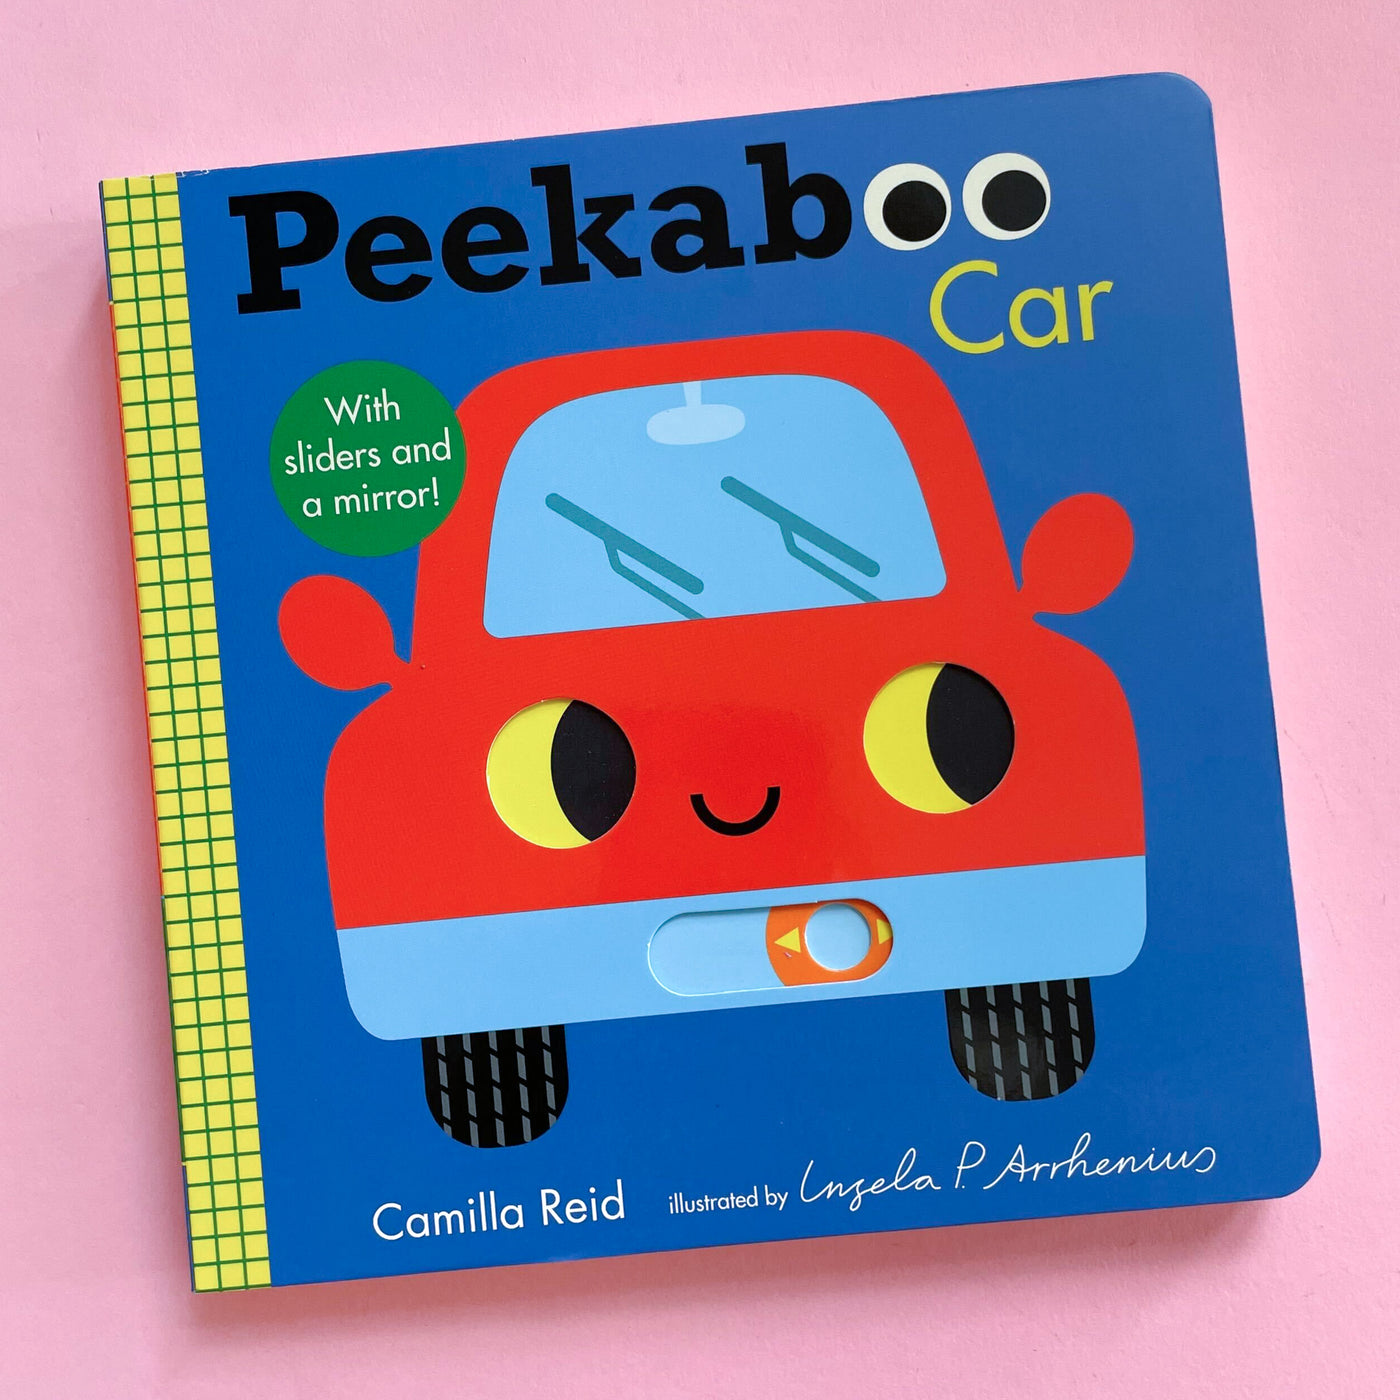 Peekaboo: Car by Camilla Reid and Ingela P Arrhenius